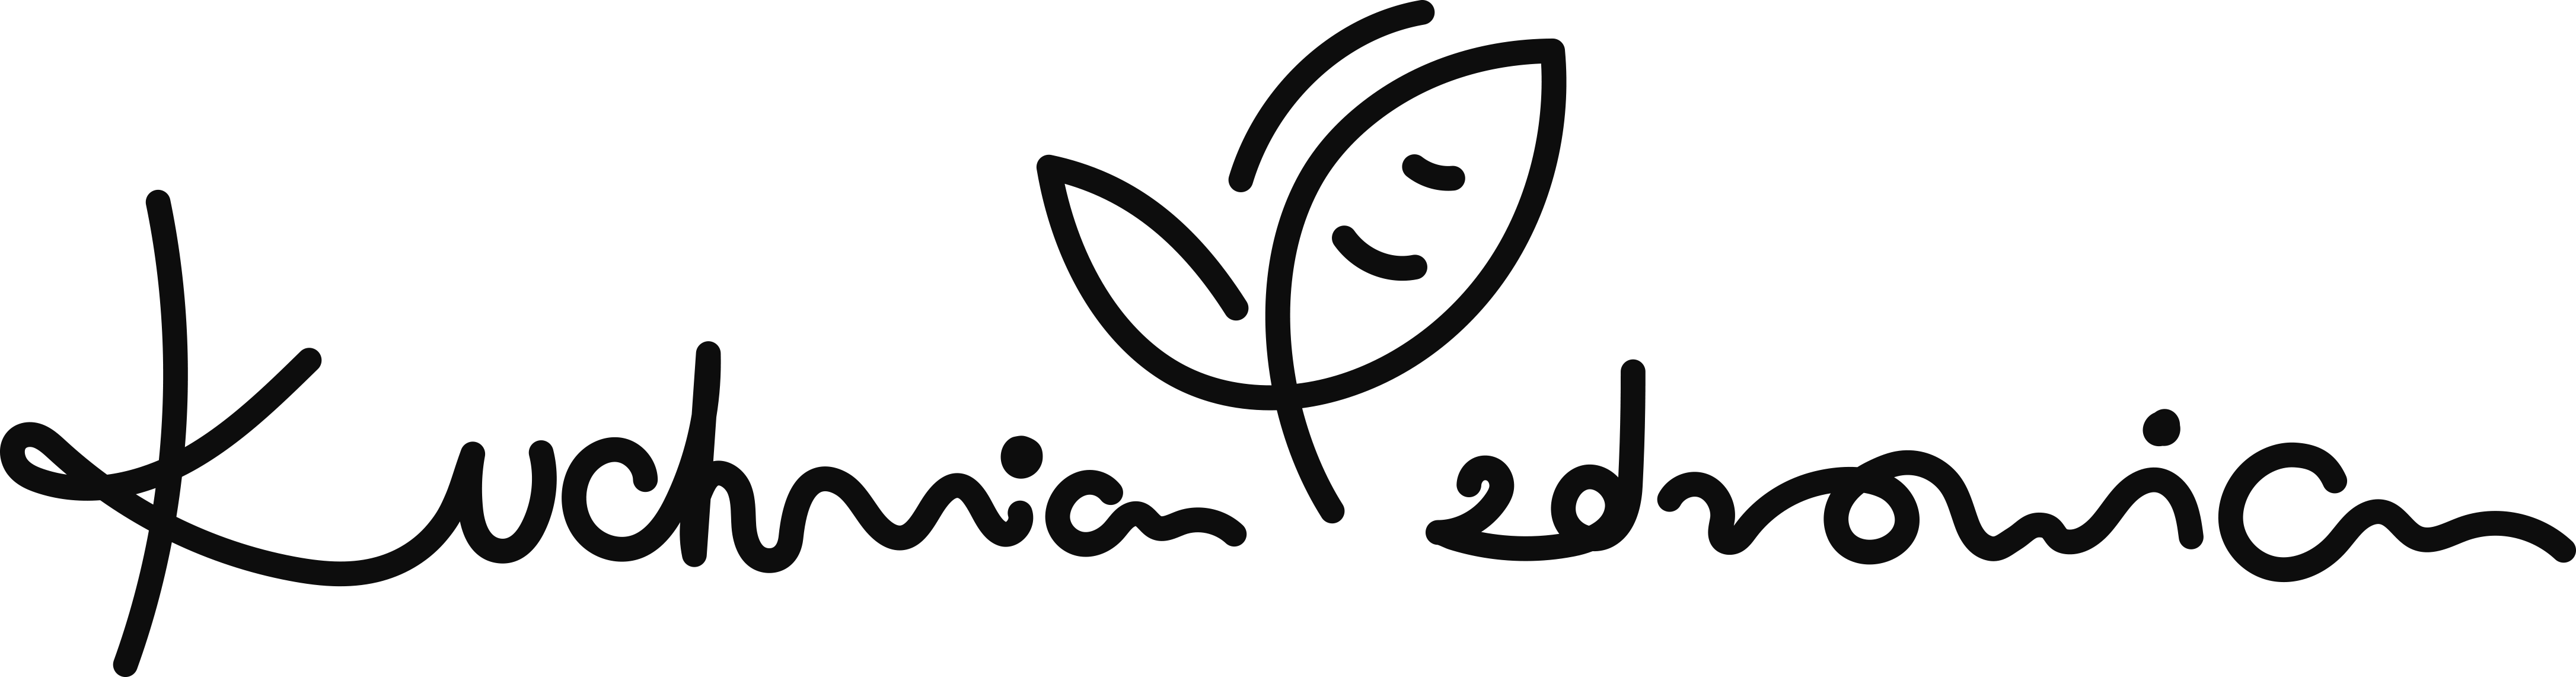 logo 3png